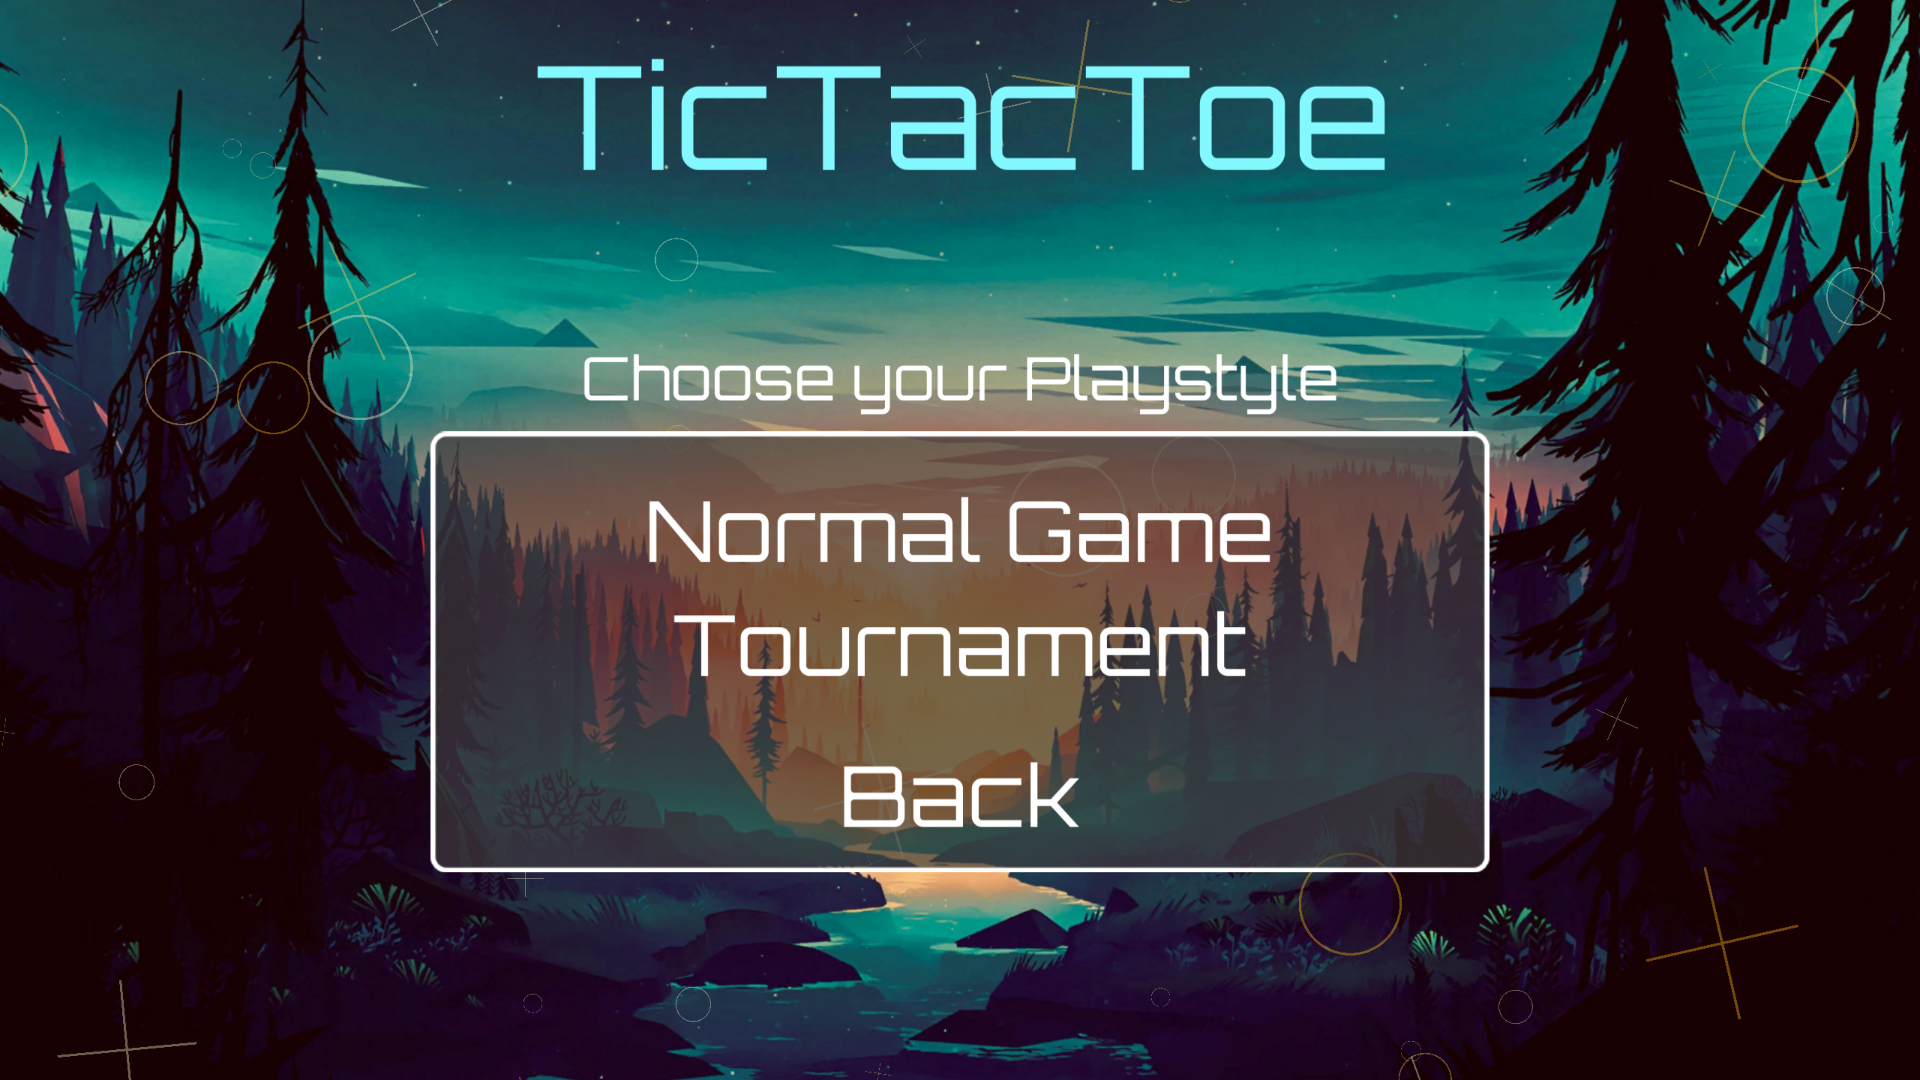 TicTacToe Tournament